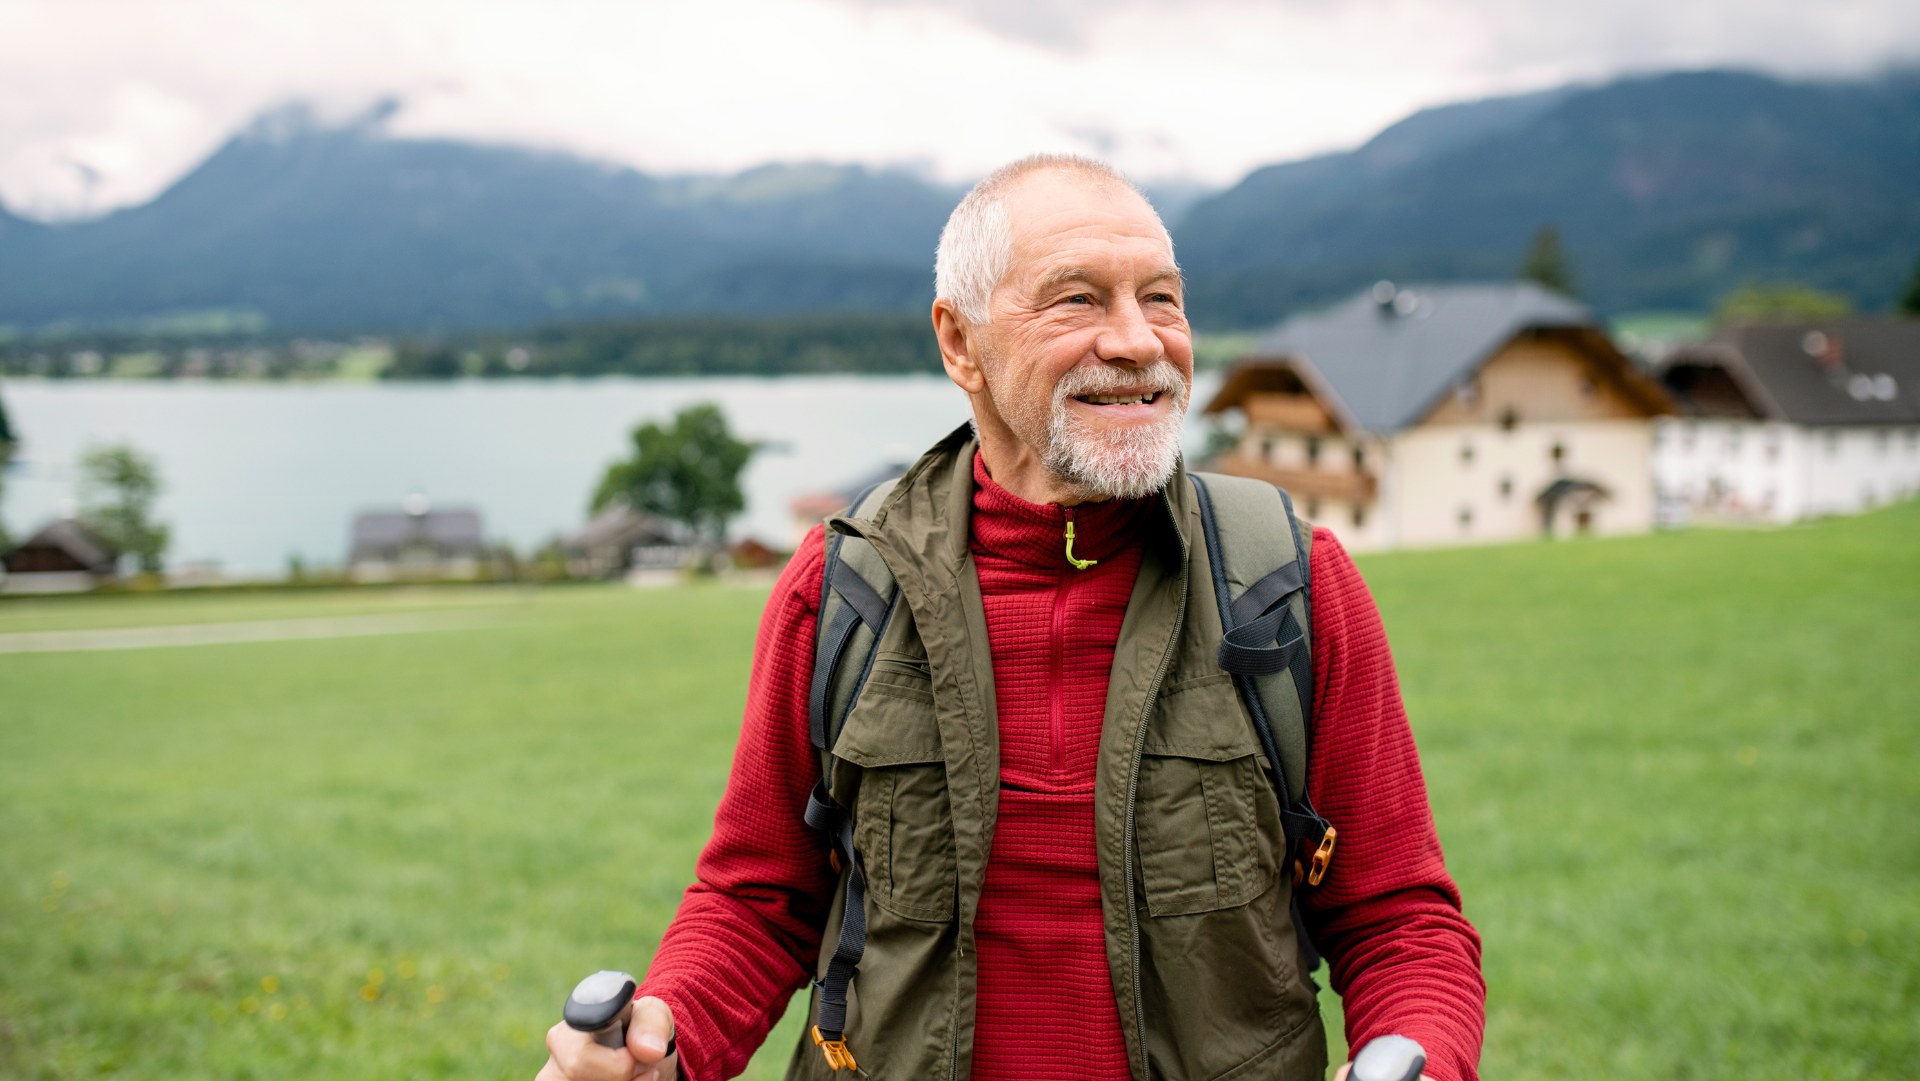 Ćwiczenia dla osób starszych — dlaczego są ważne i jakie są zalecane?